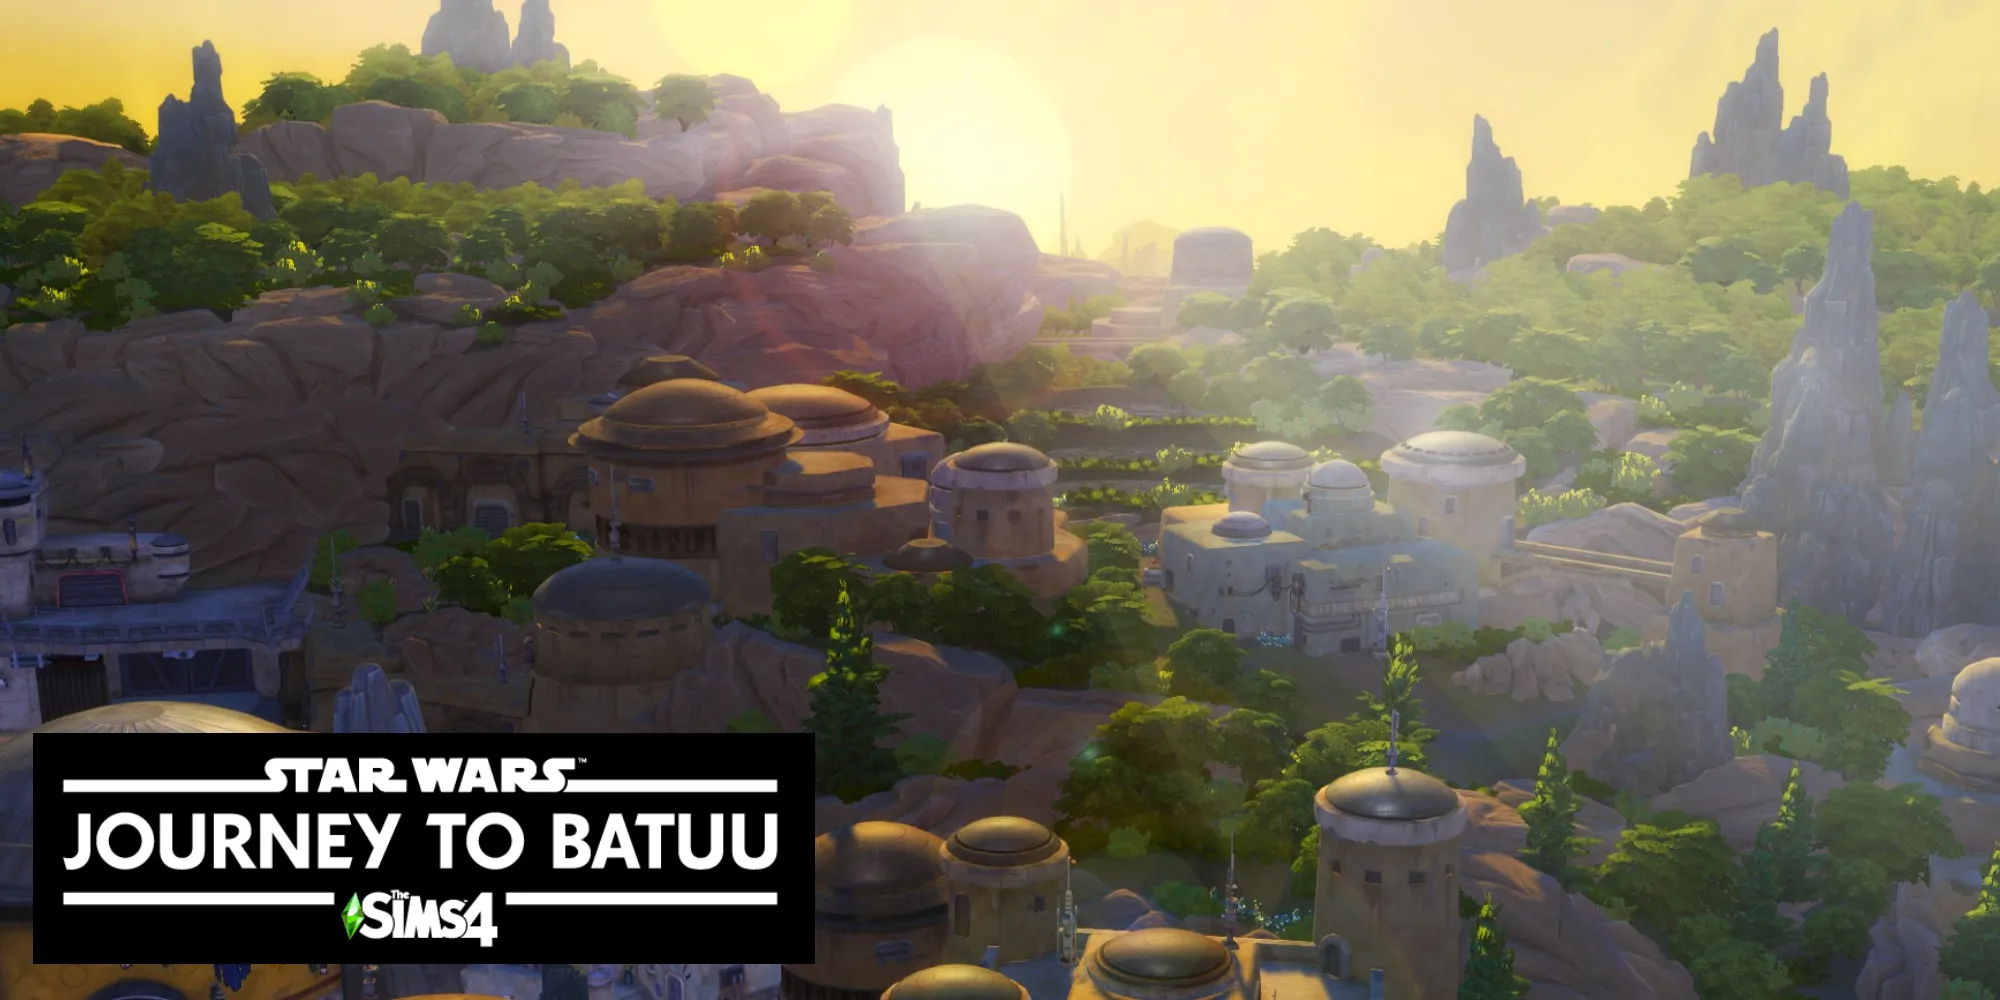 Une photo du lever de soleil dans le monde chaud de Batuu dans Les Sims 4.